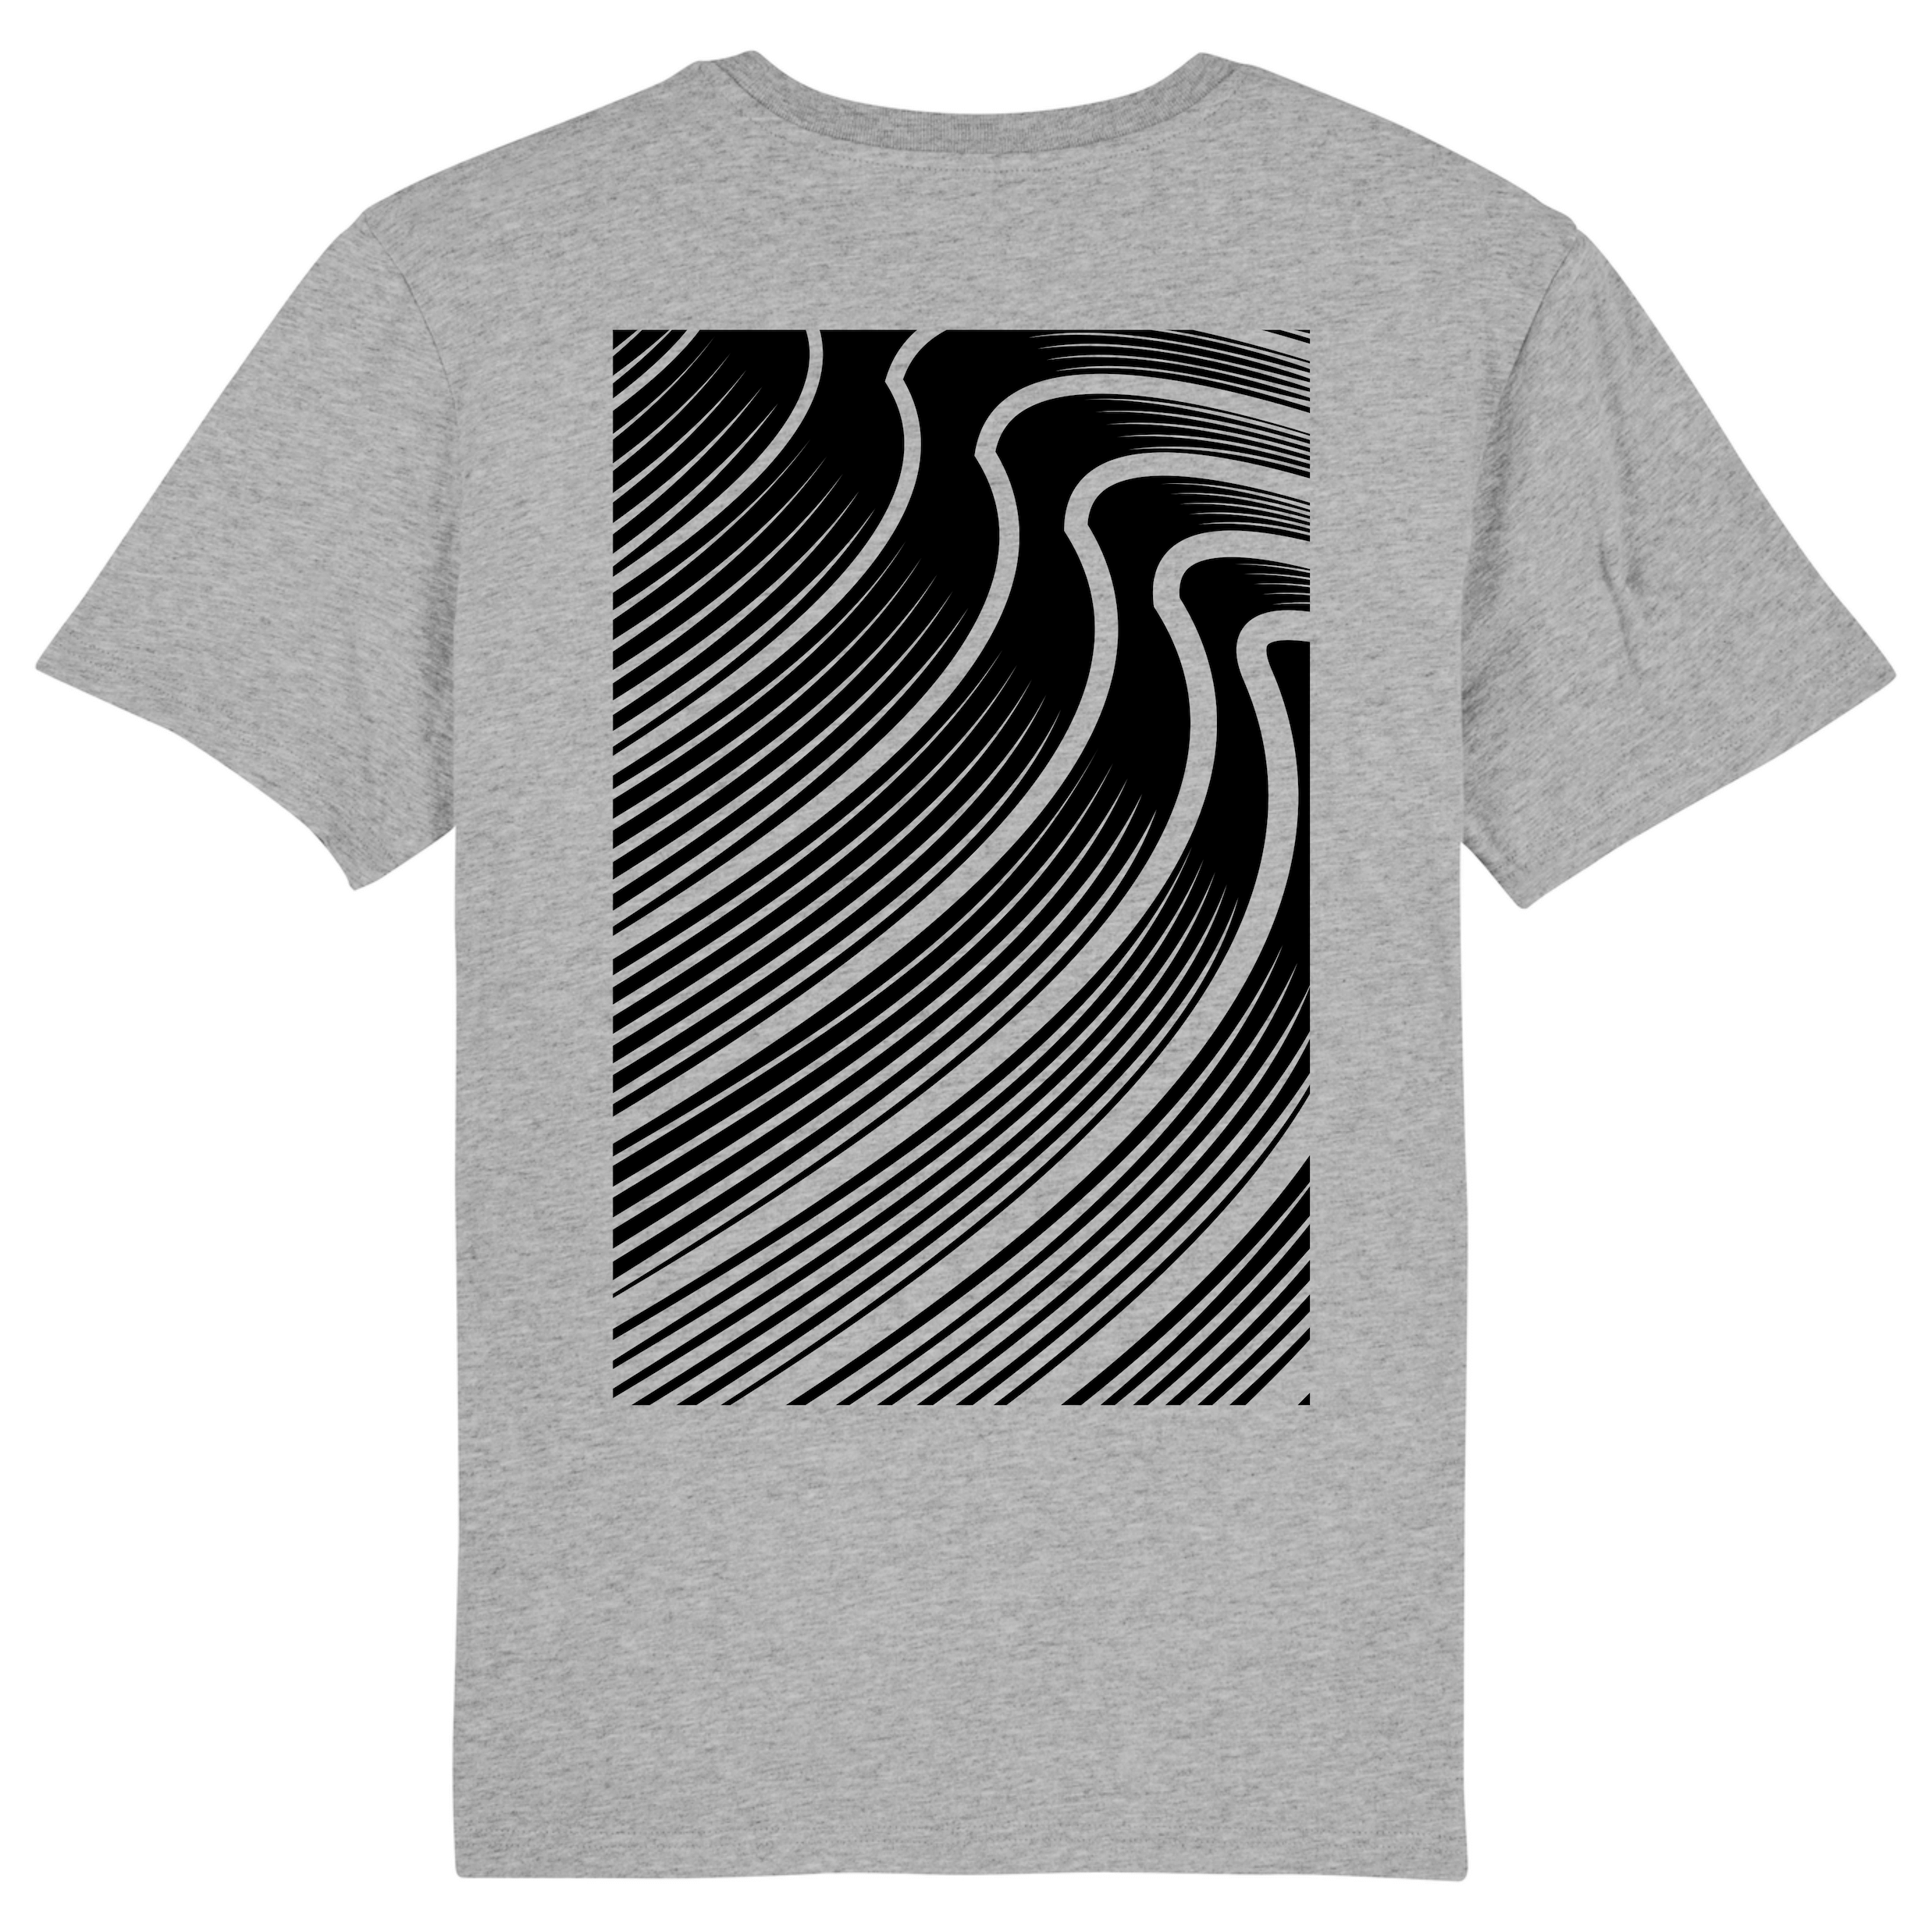 Grijs T-shirt met kunstzinnig surf-golven design - Vang de kracht van de zee in stijl 